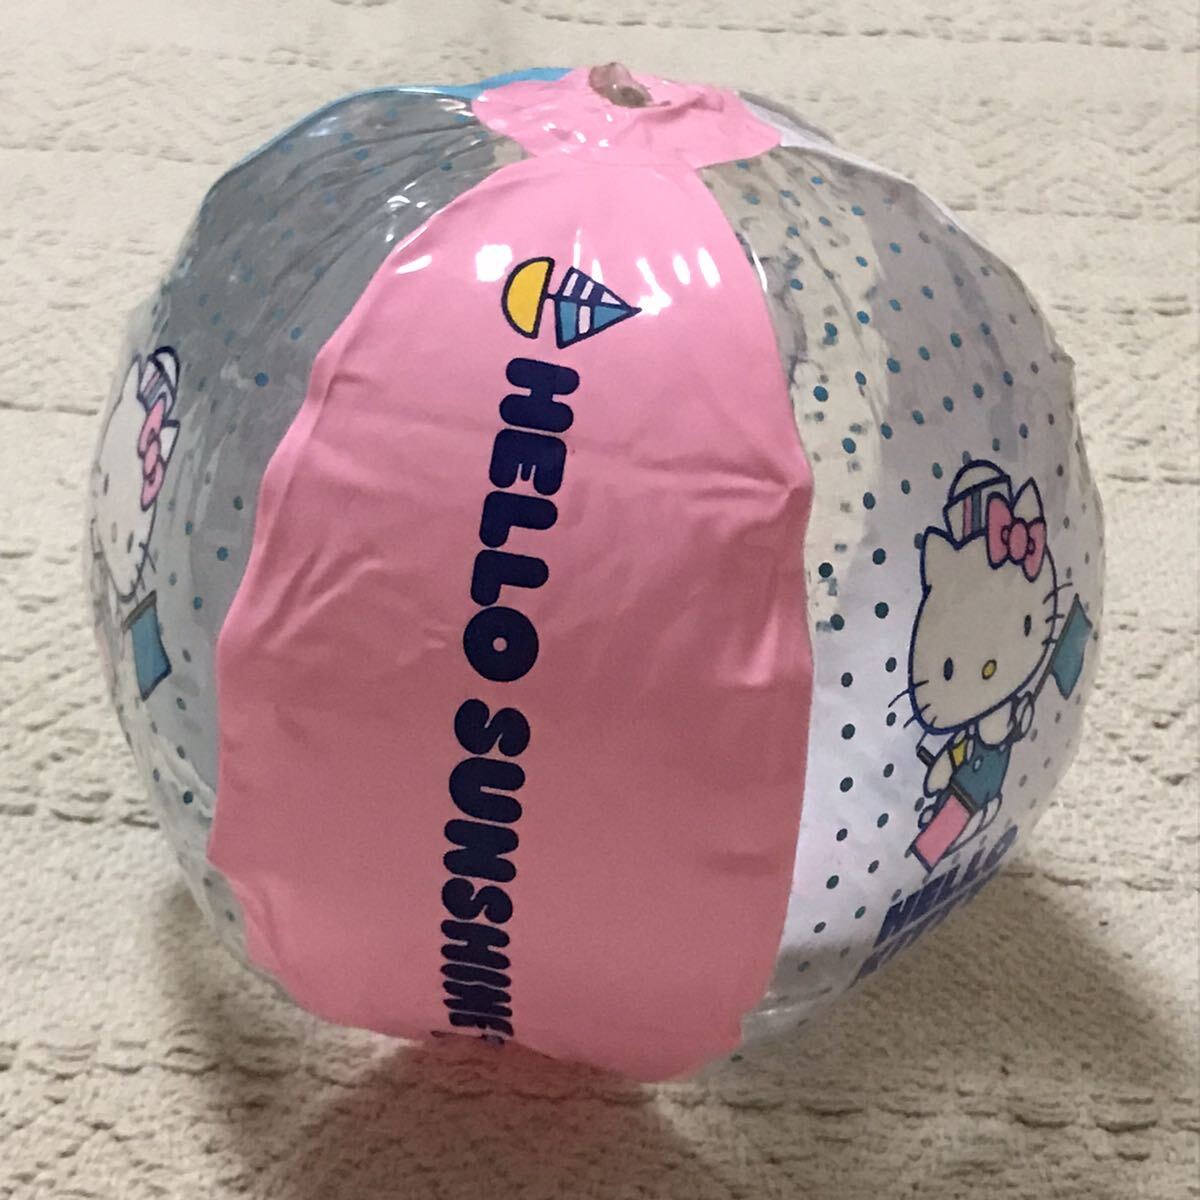  не использовался 30cm 1976 год Hello Kitty Mini размер пляжный мяч пастель полька-дот розовый Sanrio бледно-голубой воздух винил способ судно пустой bi Showa Retro сделано в Японии 